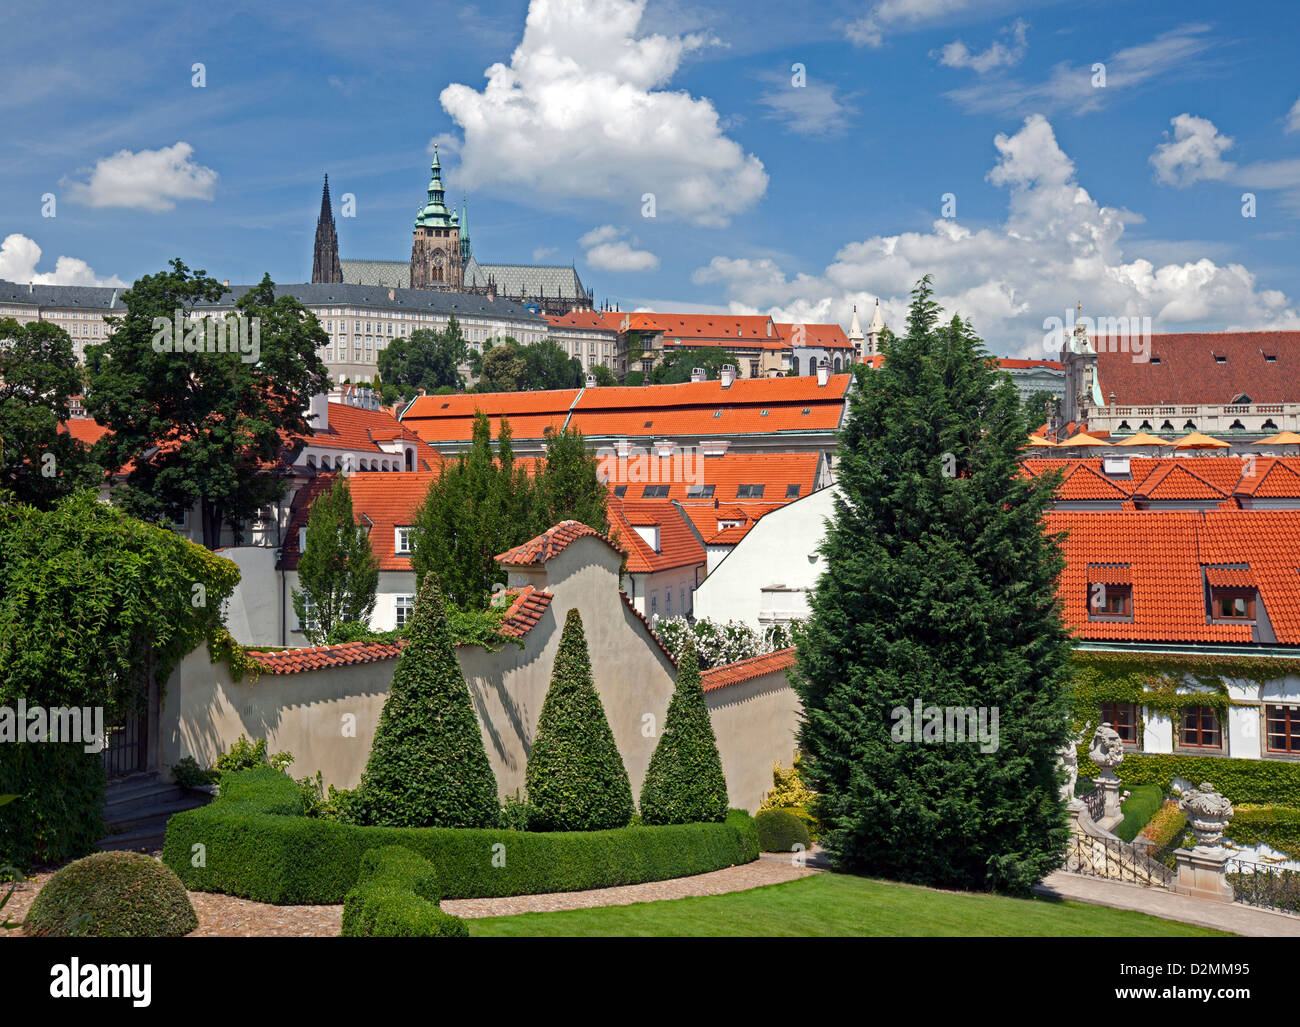 Prague - Hradcany, St. Vitus Cathedral and Vrtbovska Garden, Czech Republic Stock Photo